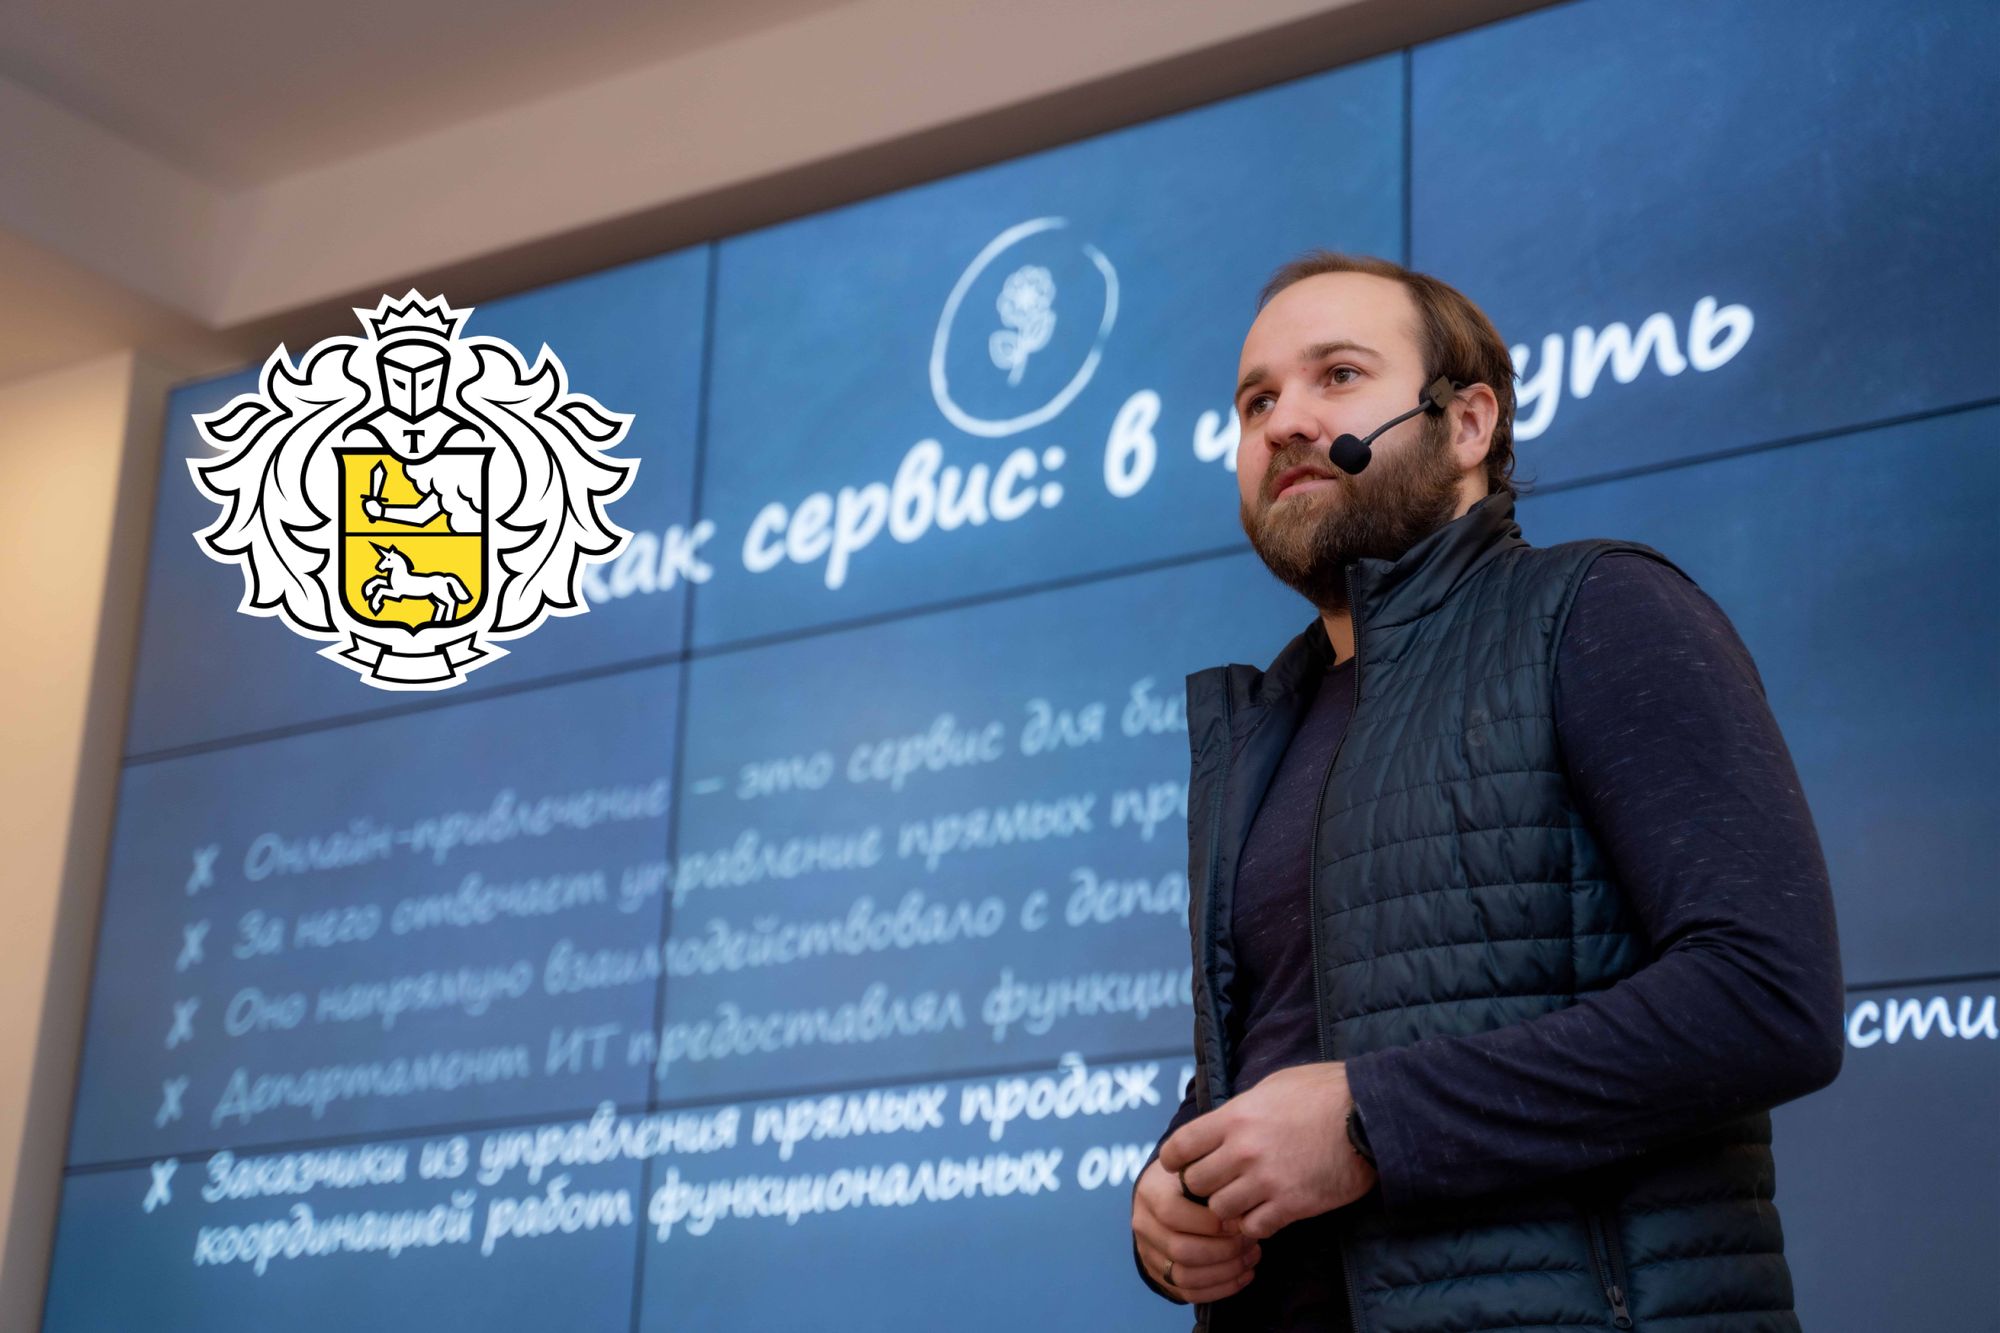 Представитель IT-команды Тинькофф Банк выступил в Бишкеке. Как это было